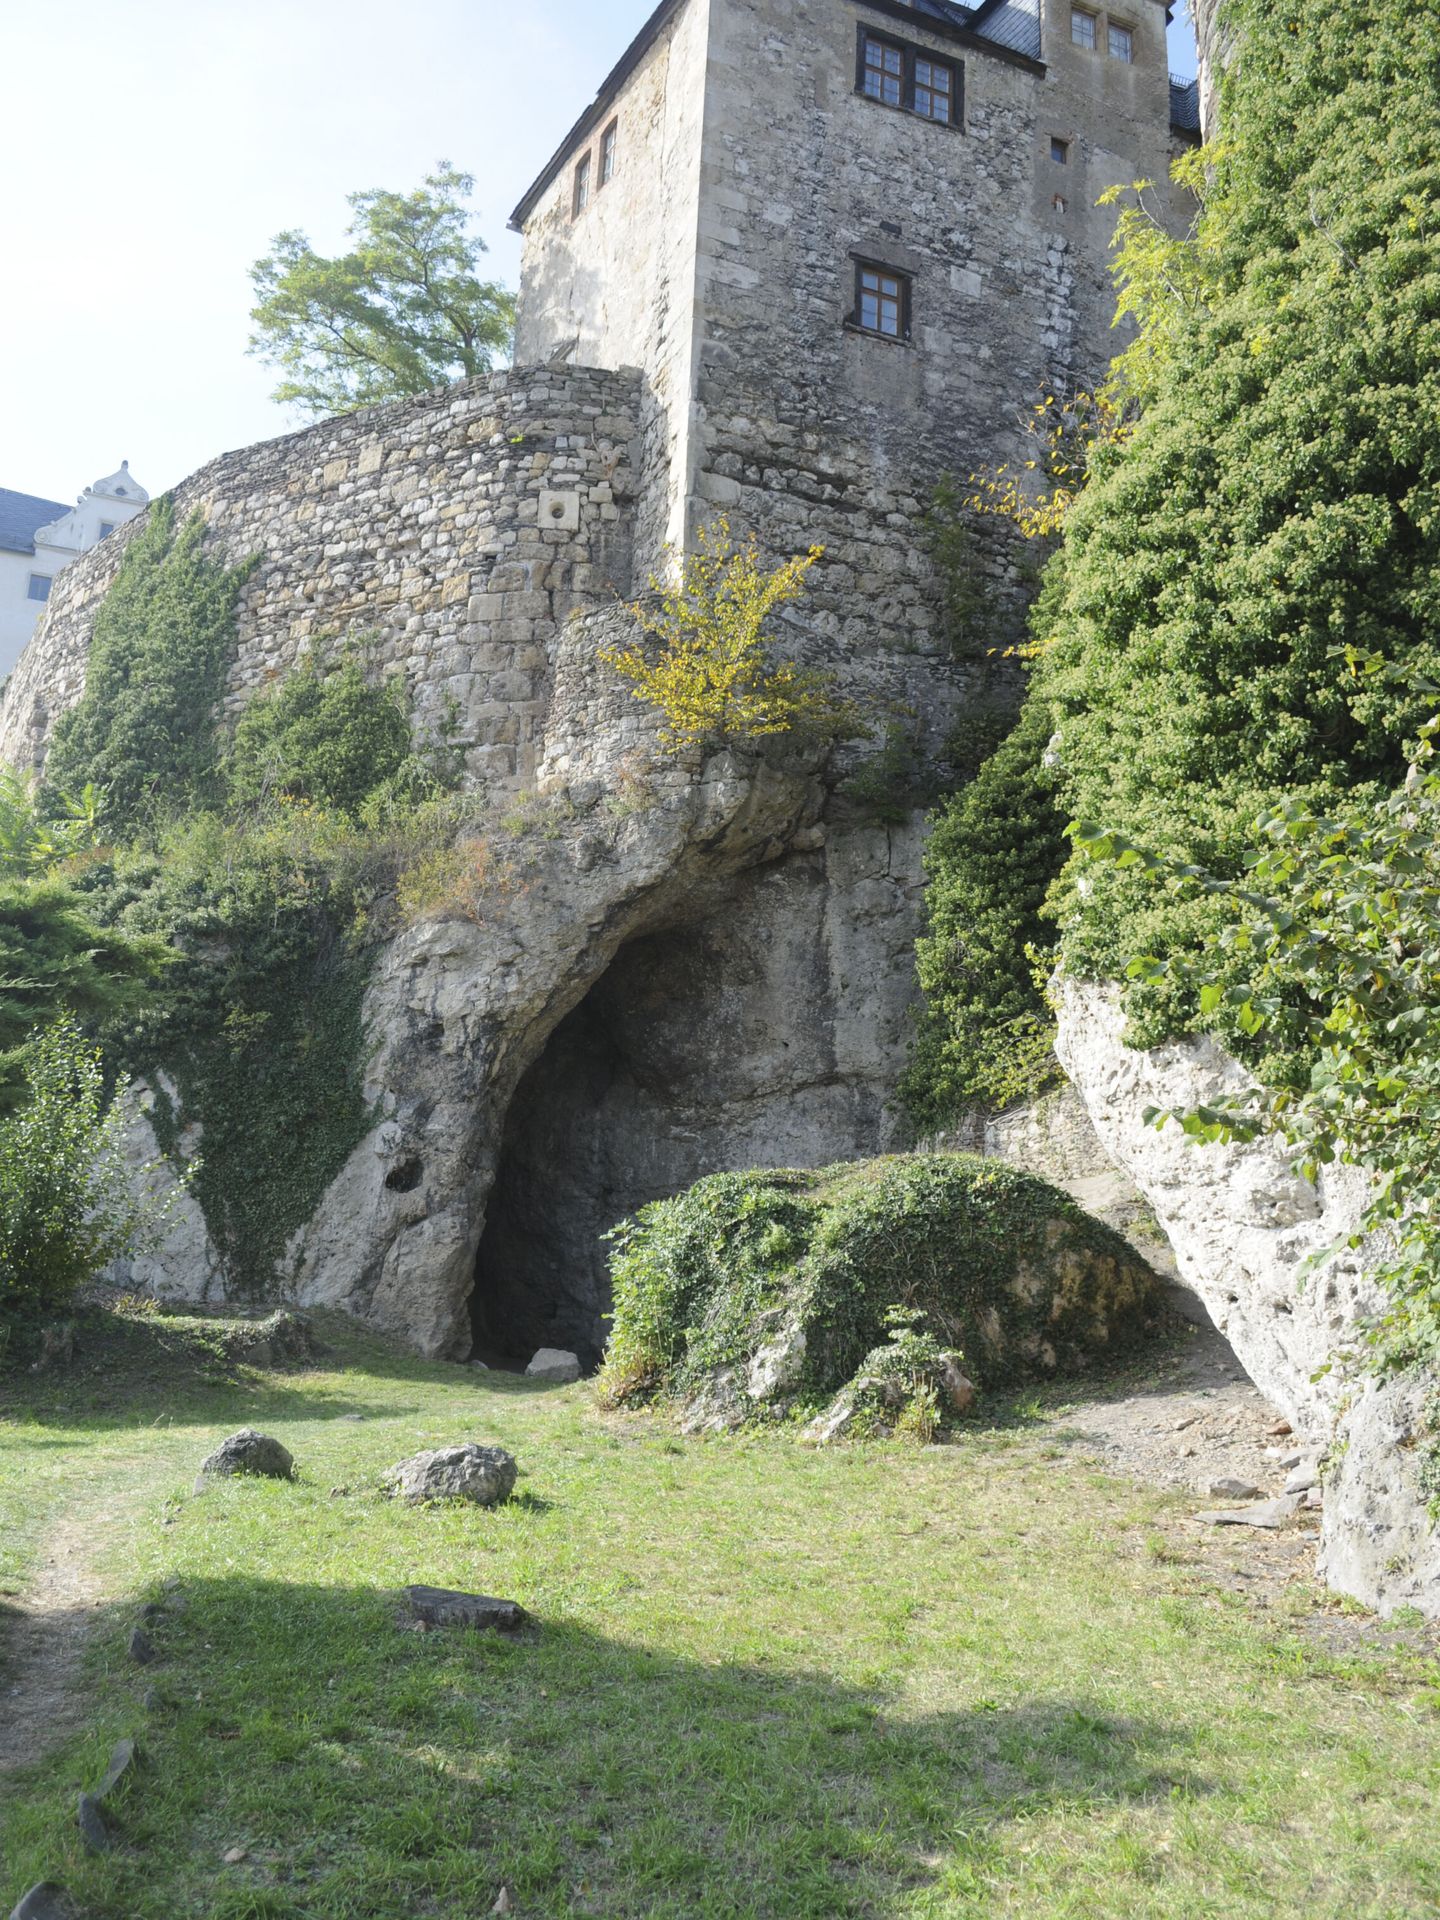 Vista de la cueva Ilsenhöhle, bajo el castillo de Ranis, Alemania. Hace unos 45.000 años, Europa atravesaba profundos cambios. (EFE Tim Schüler Tlda Max Planck de Antropología Evolutiva de Leipzig) 